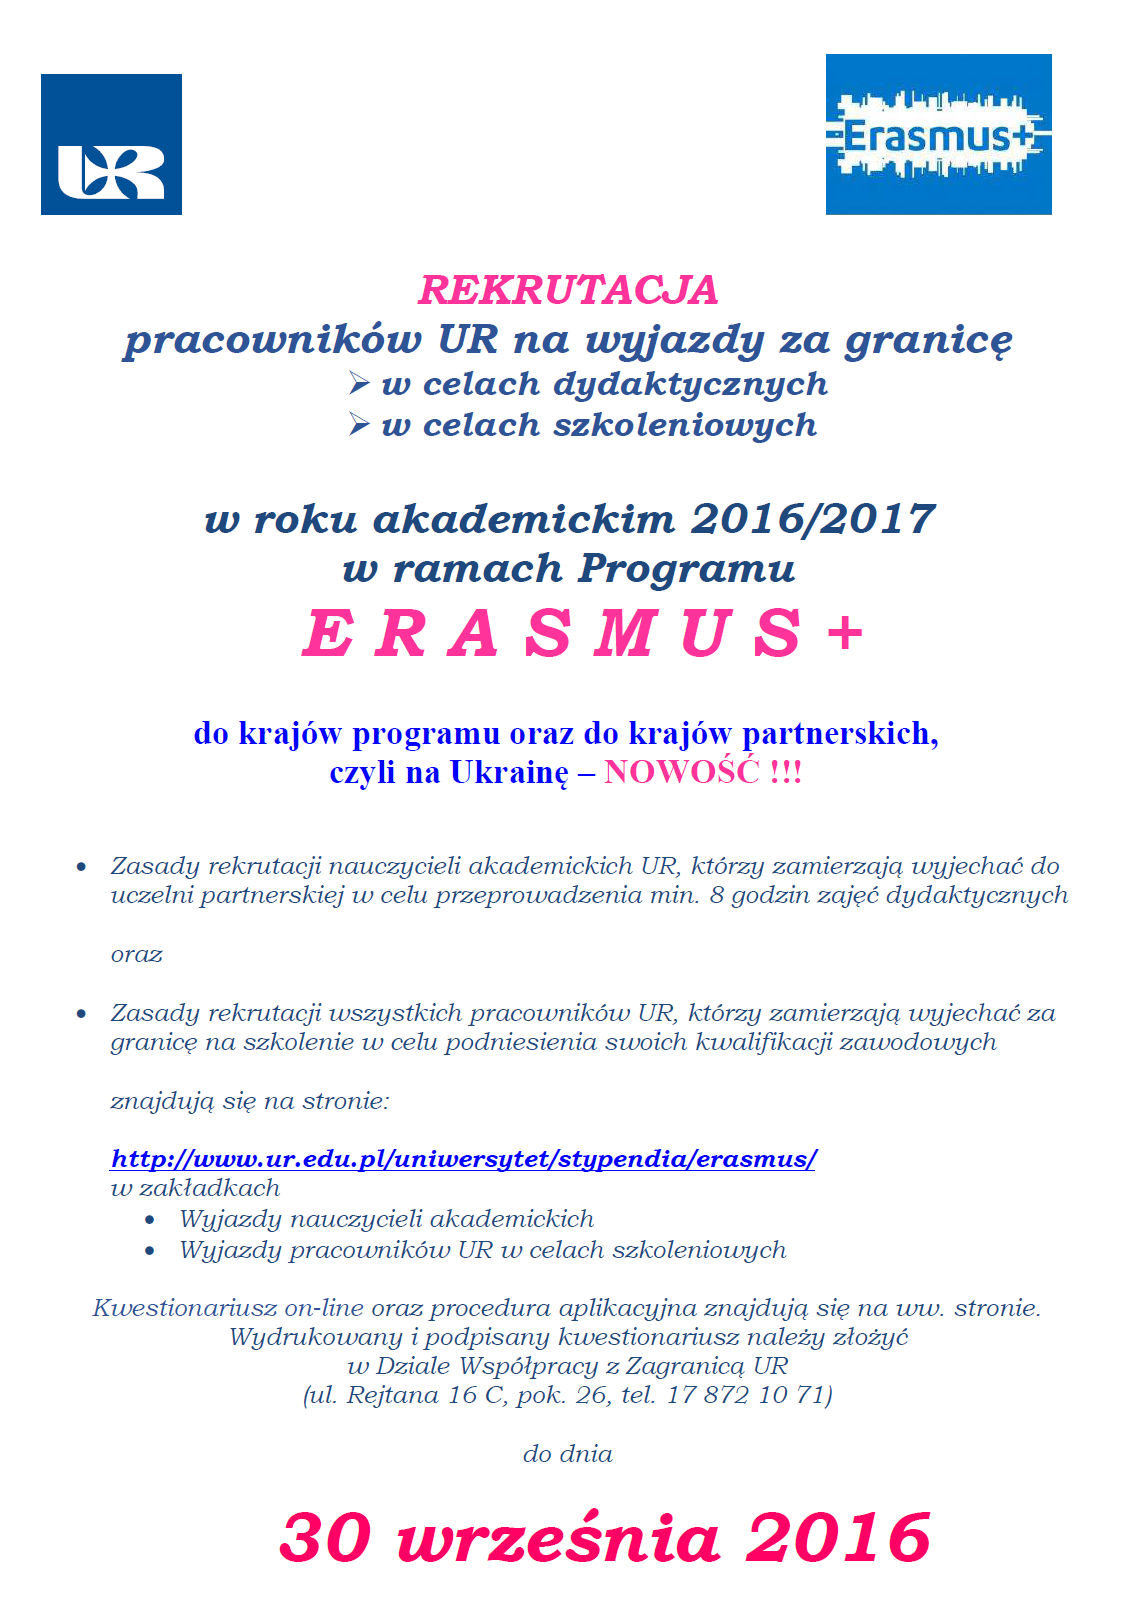 Rekrutacja nauczycieli akademickich na wyjazd na Ukrainę w ramach programu Erasmus+